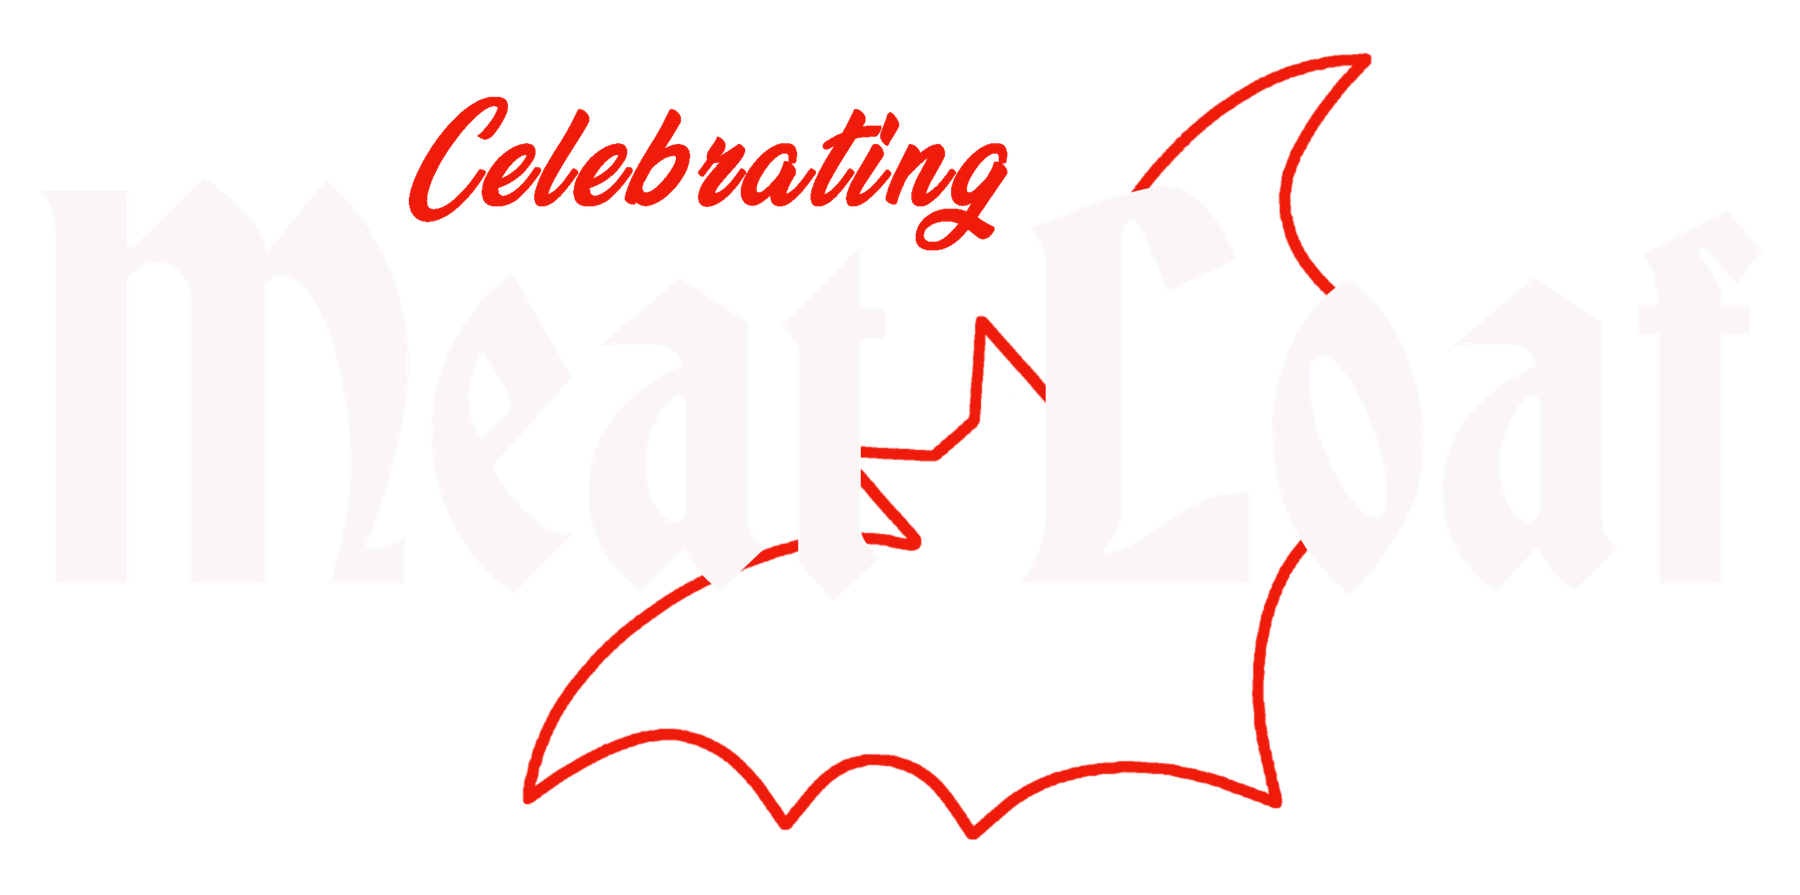 Meatloaf Sketched 2 | Fonts ~ Creative Market